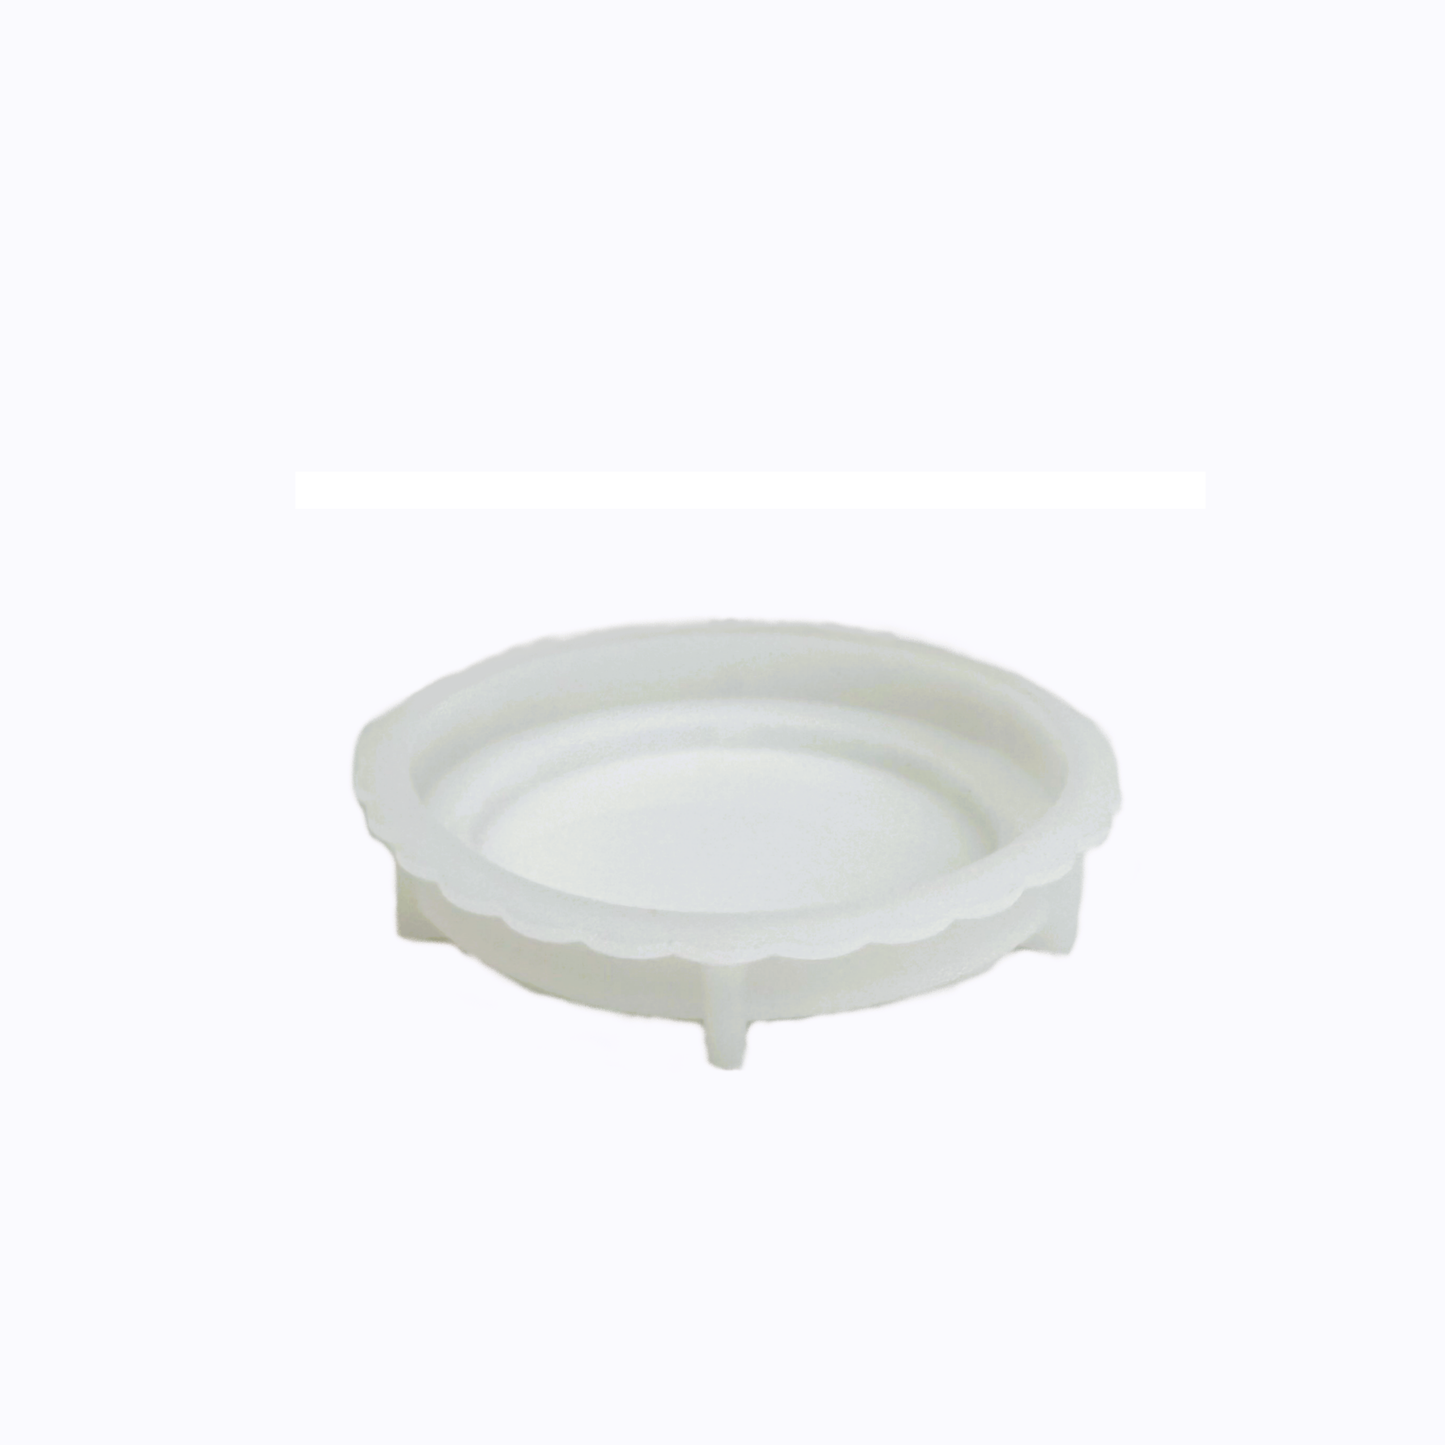 7cm Round Cup Shape Mold 圓形杯狀模具(弧形底)